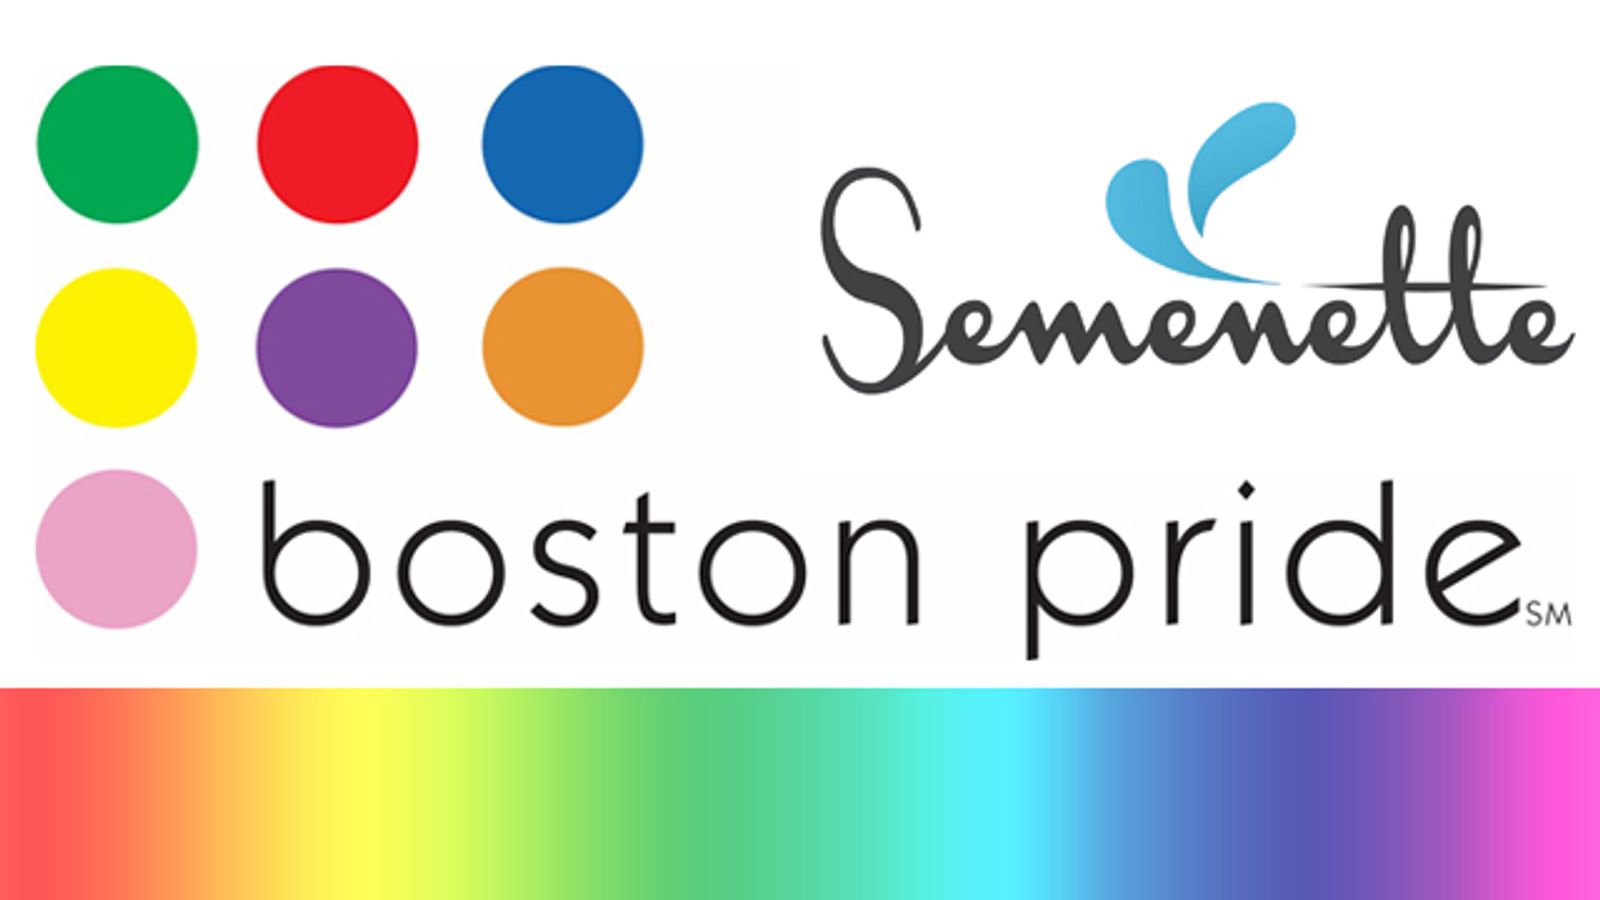 The Semenette to Exhibit at Boston Pride on Saturday, June 13